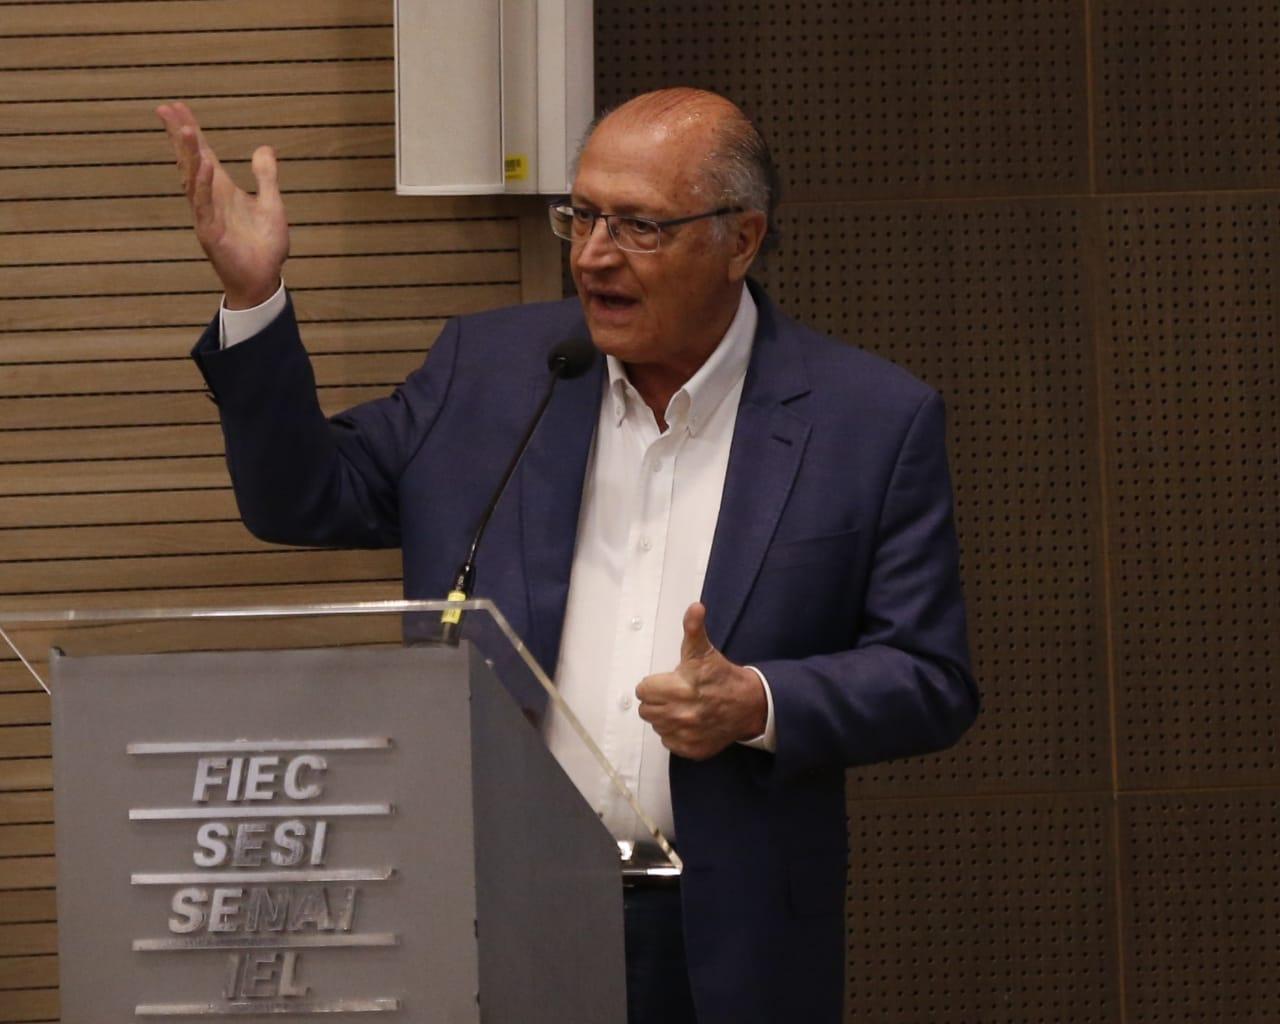 Foto que contém Alckmin na Fiec